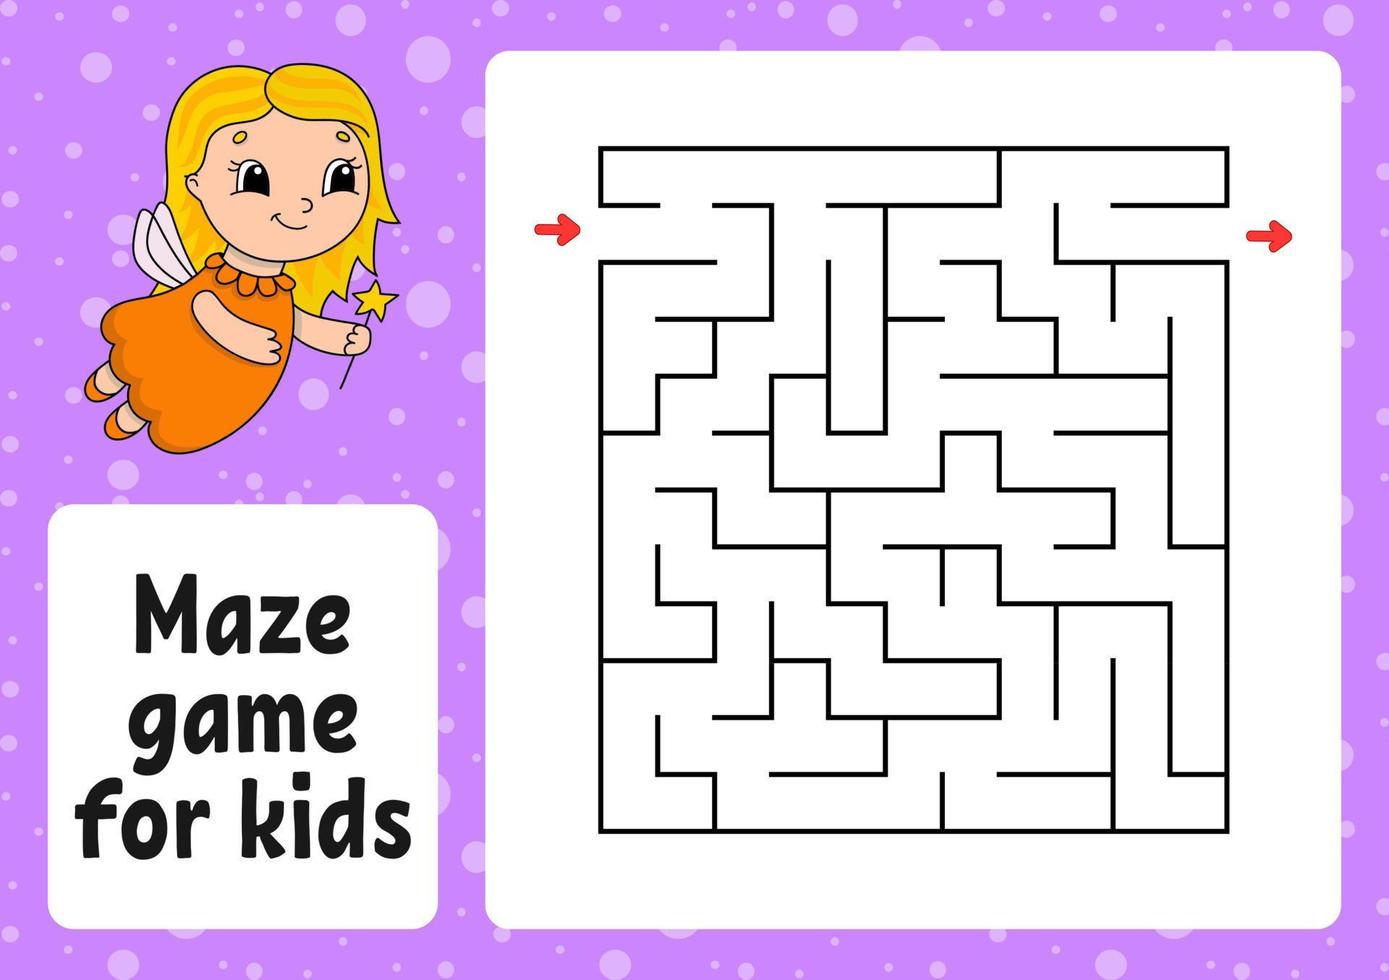 Labyrinthspiel für Kinder. lustiges labyrinth. Arbeitsblatt für Aktivitäten. Puzzle für Kinder. Cartoon-Stil. logisches Rätsel. Farbvektorillustration. vektor